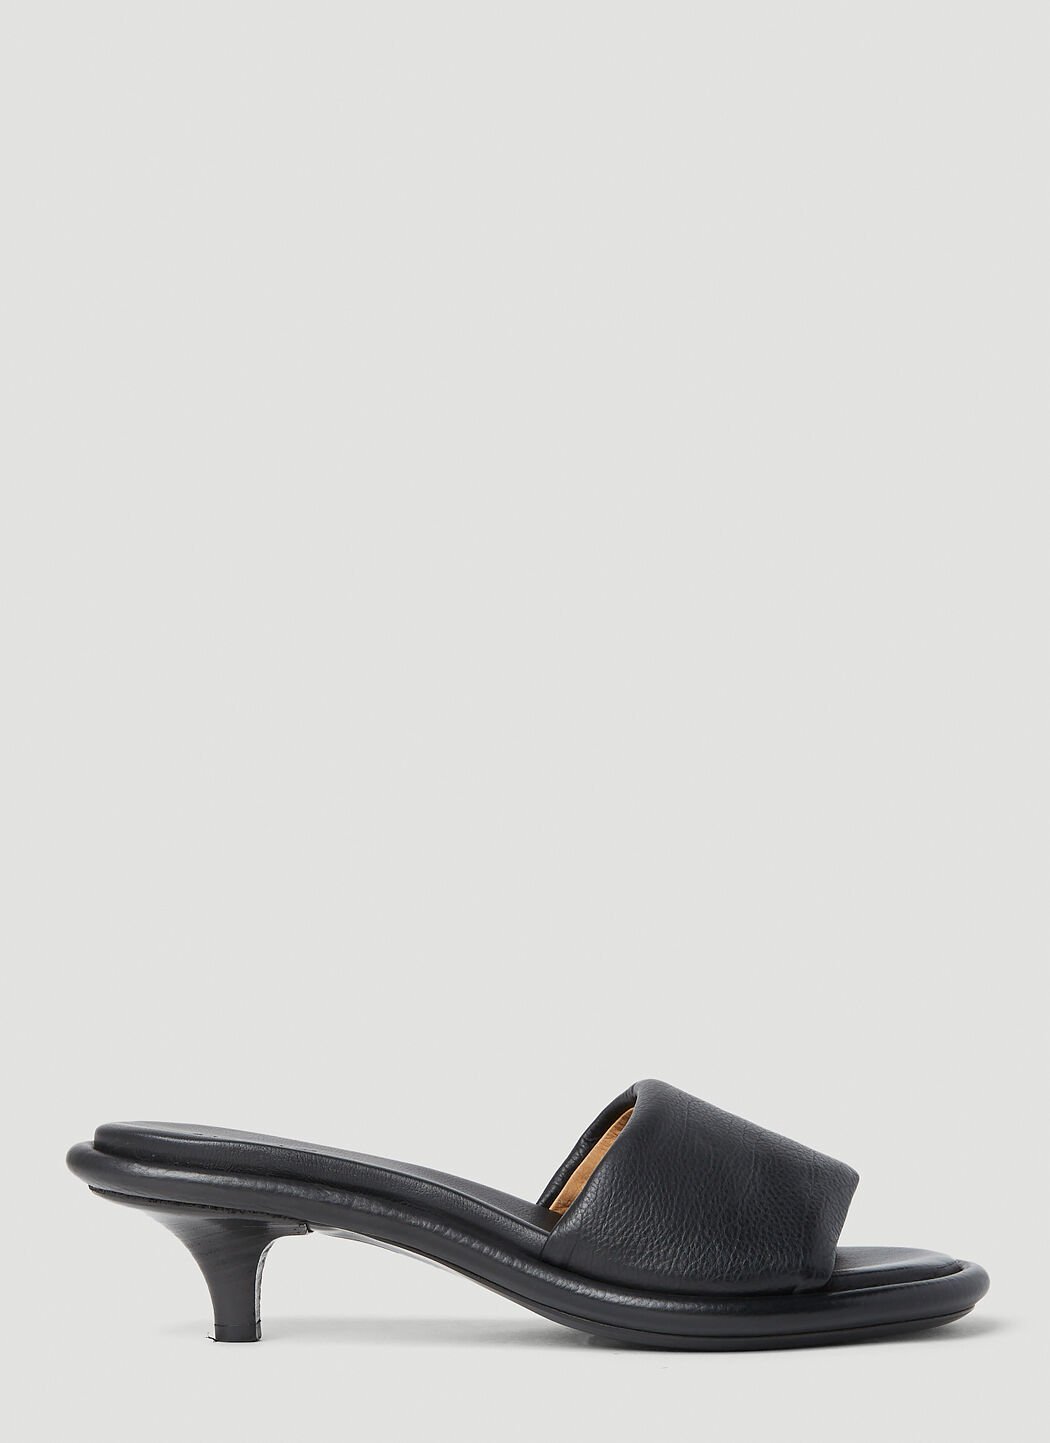 Balenciaga Spilla 小猫跟穆勒鞋 黑色 bal0252062